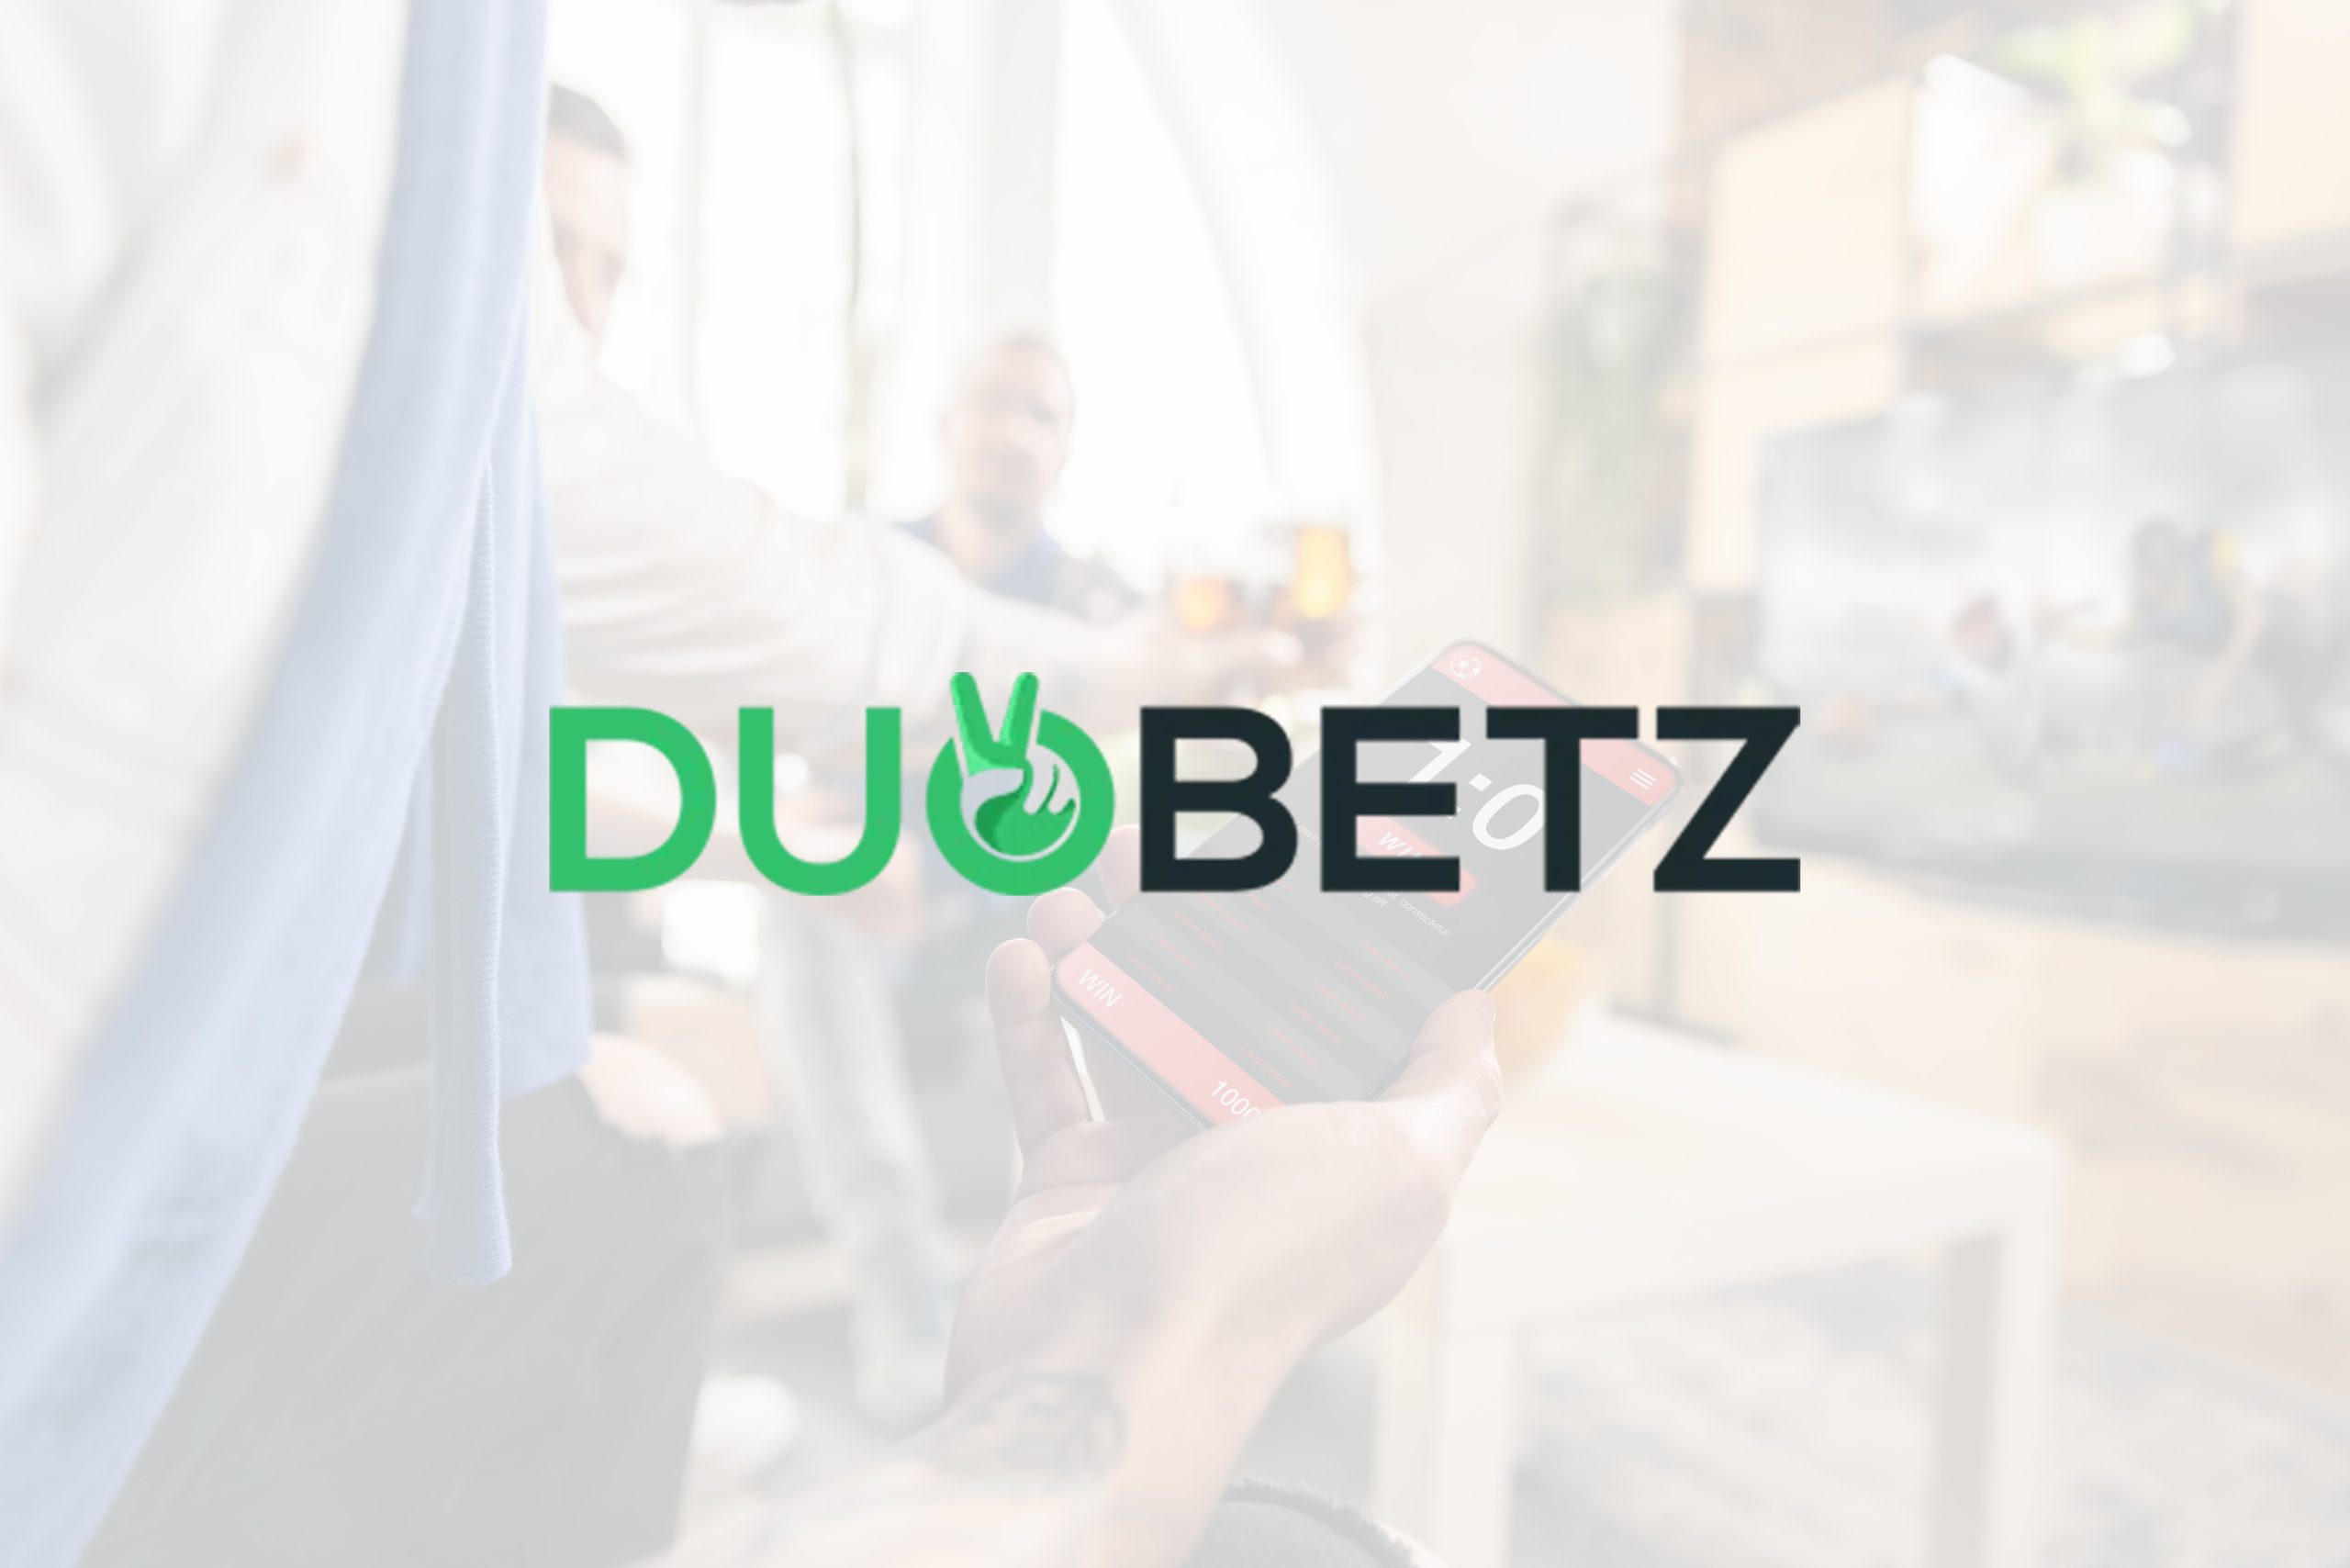 DuoBetz Bookie Not On Gamstop